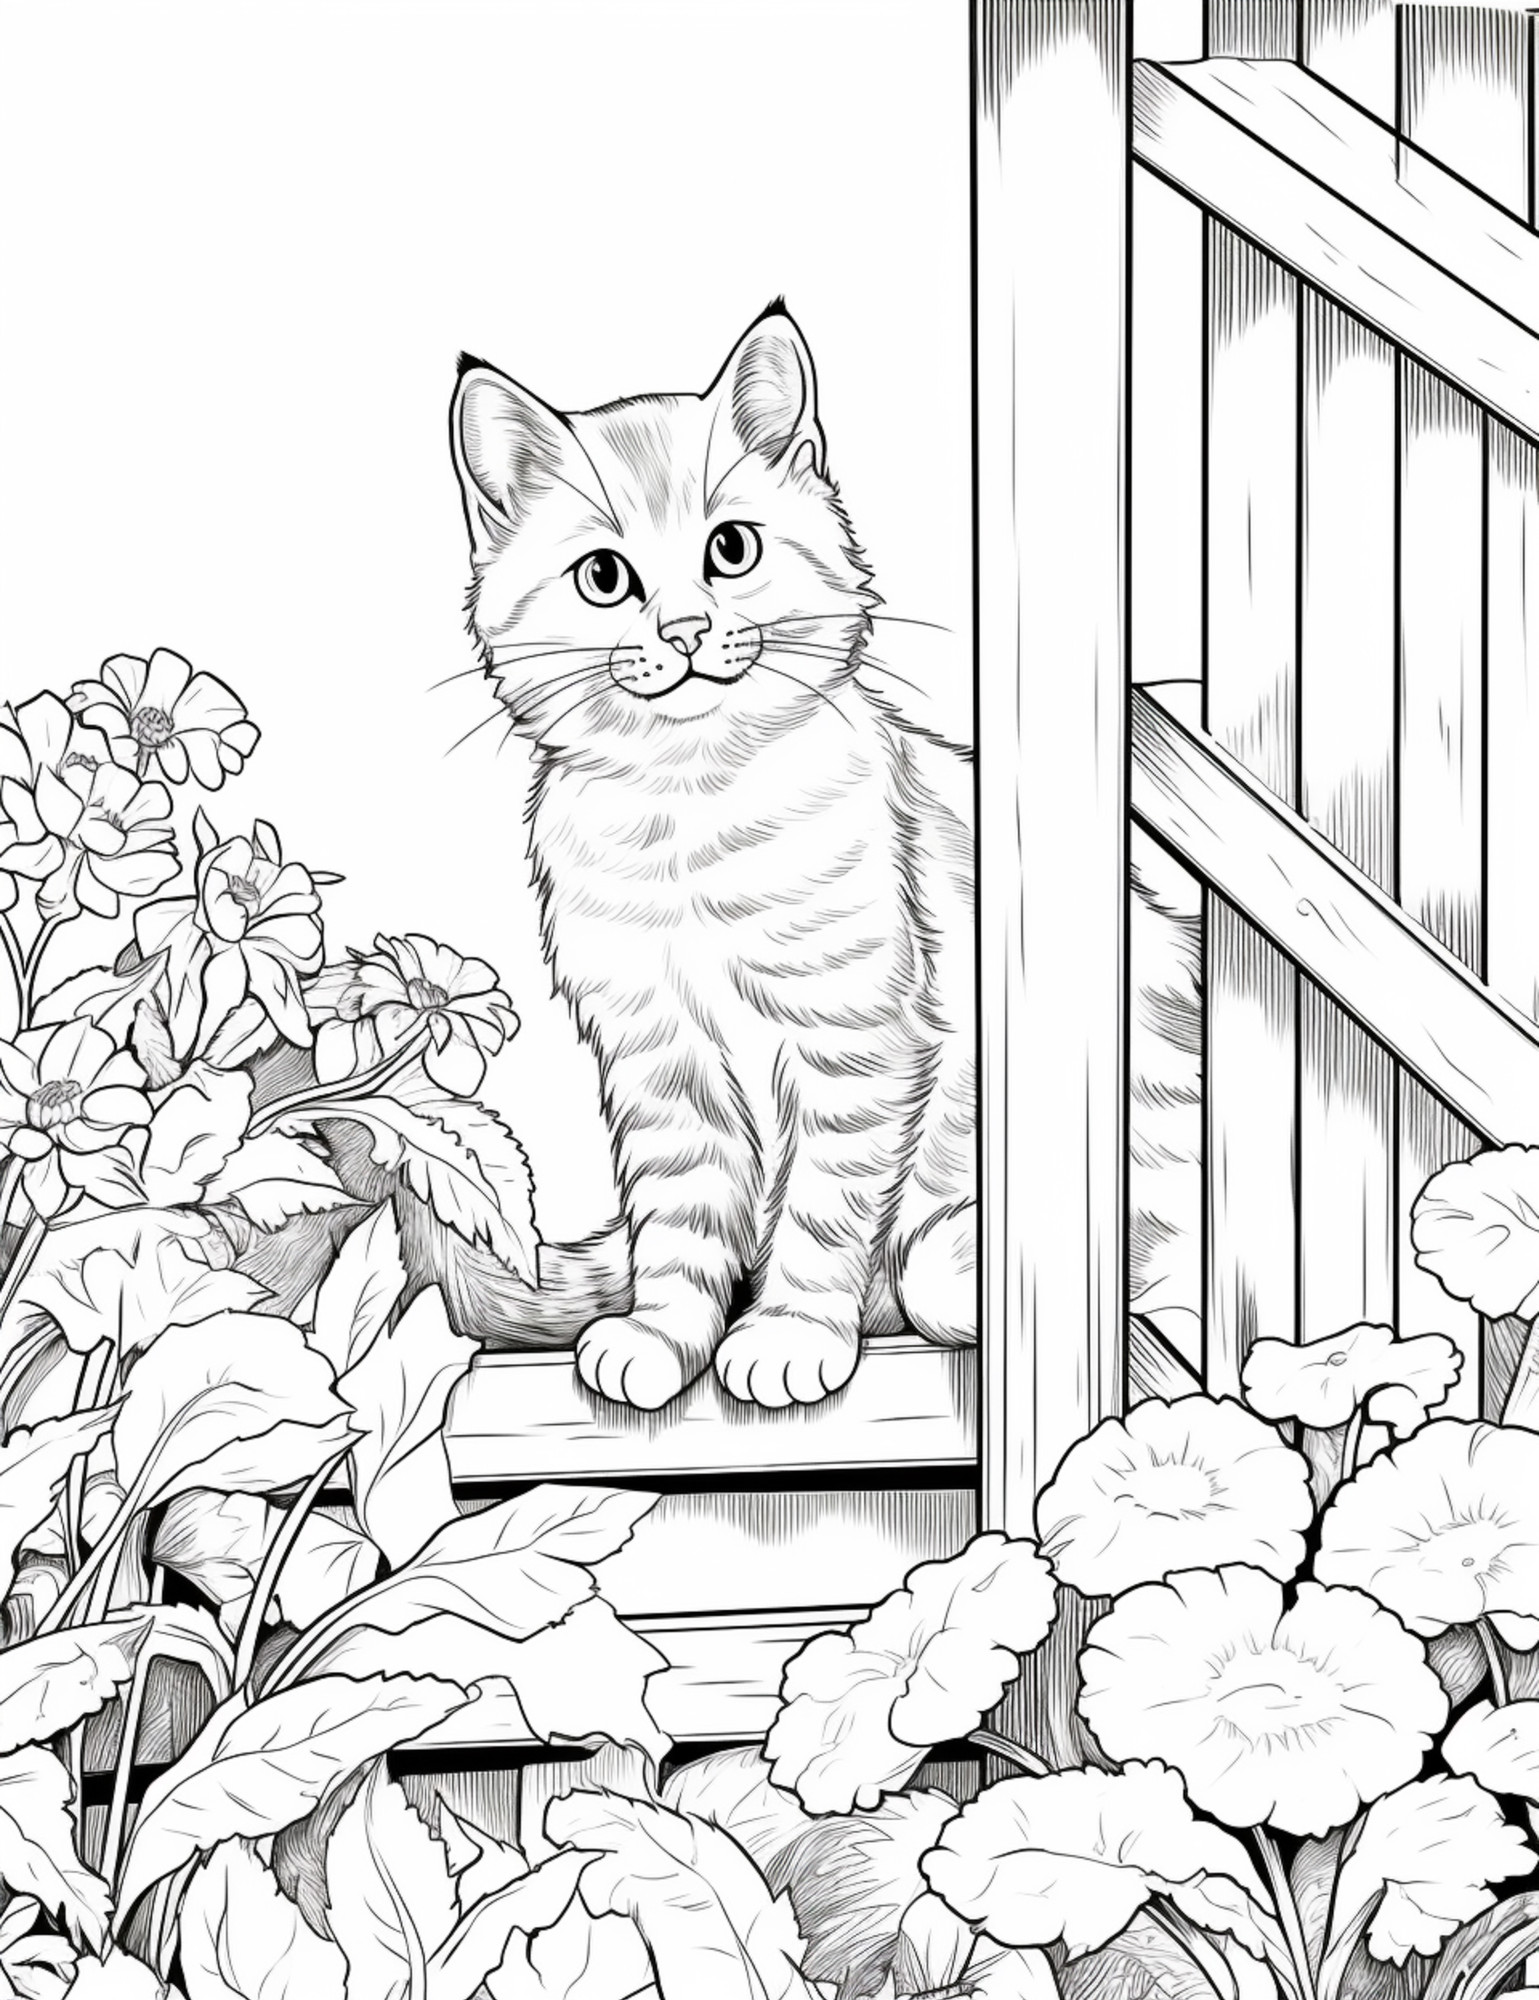 Раскраска для детей: кот в саду на фоне цветов